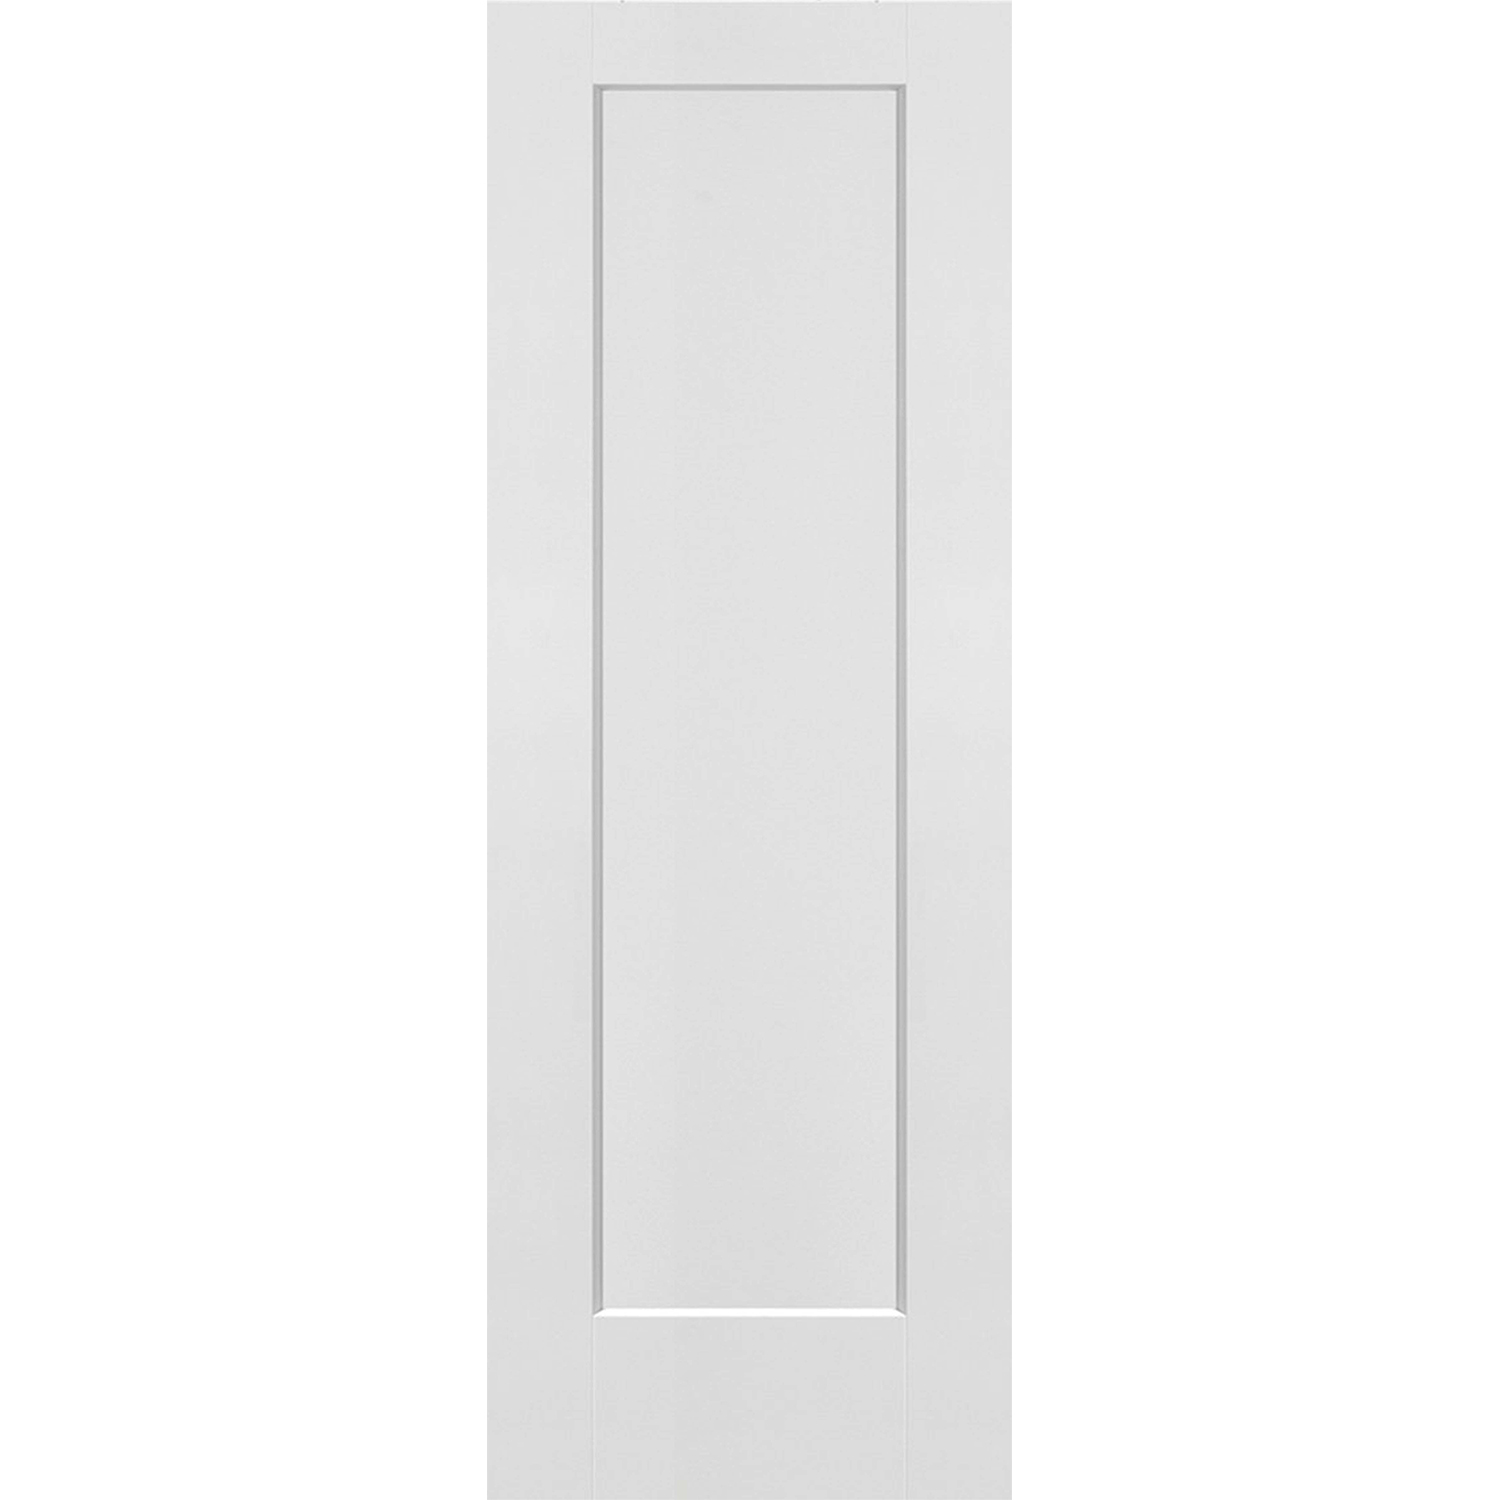 1 Panel Solid Door - 28 x 80